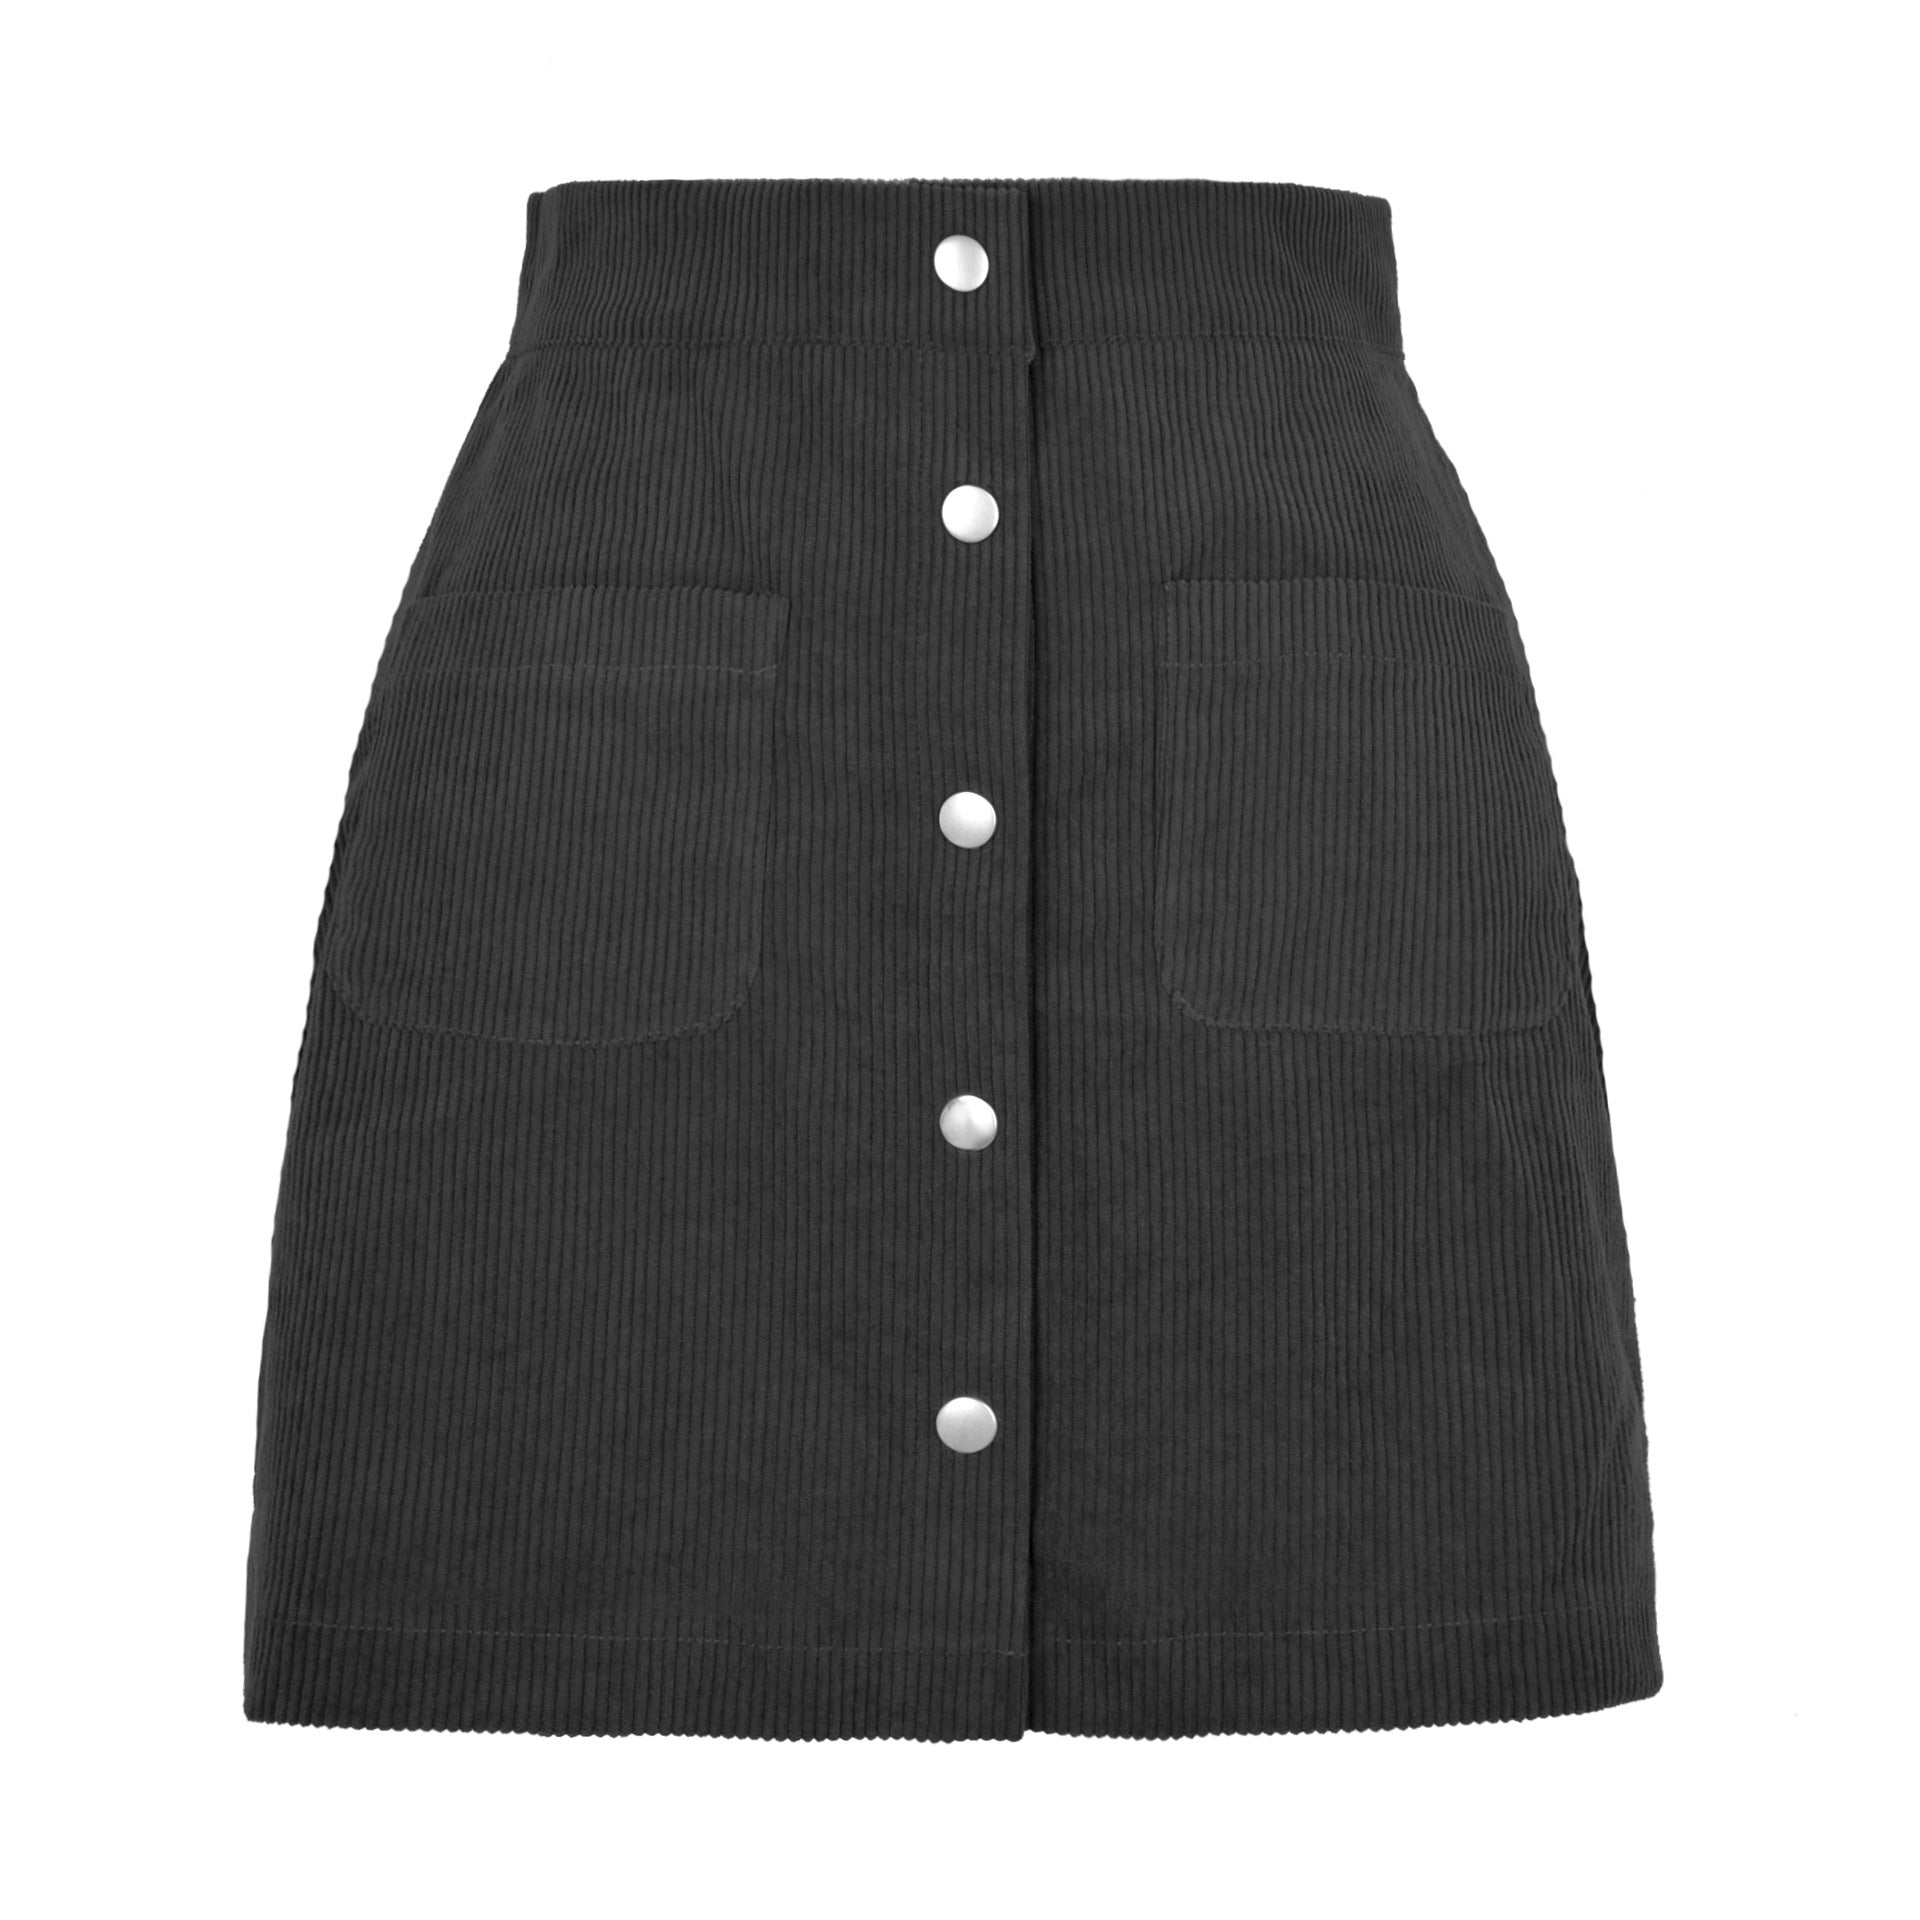 Sasha’s Slim Fit Solid Skirt - S / Black